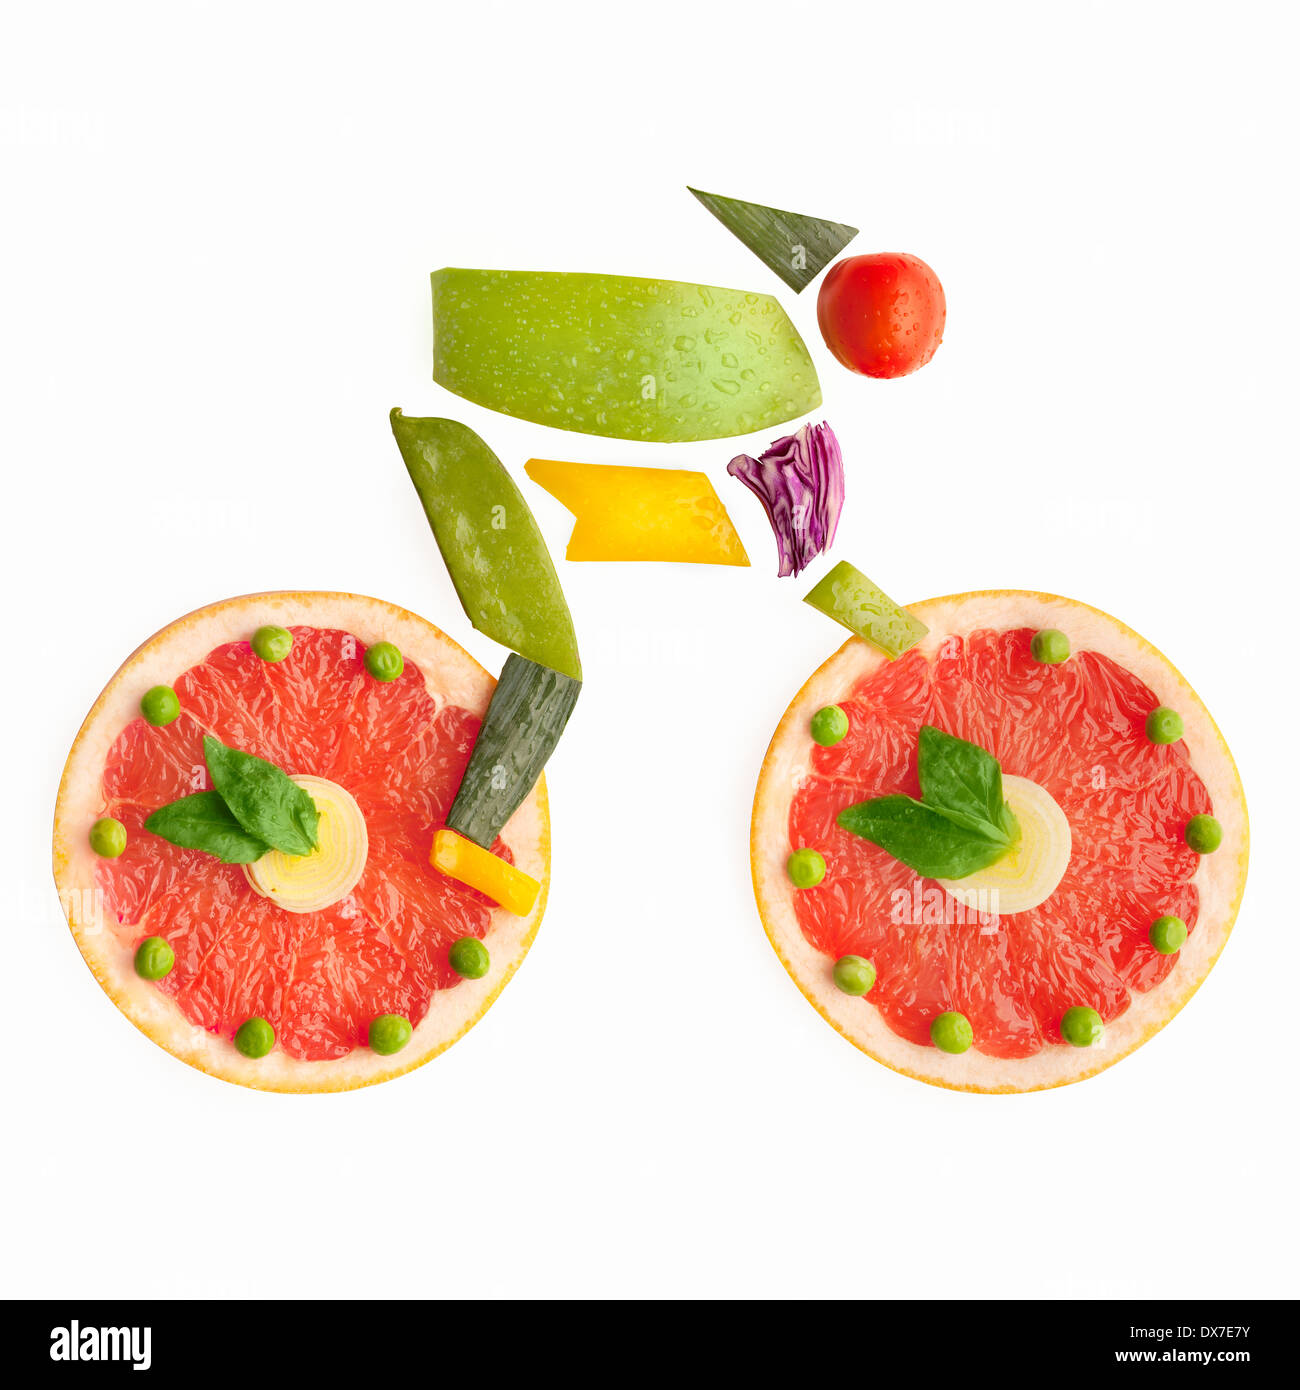 Obst und Gemüse in der Form eines Radfahrers auf dem Fahrrad. Stockfoto